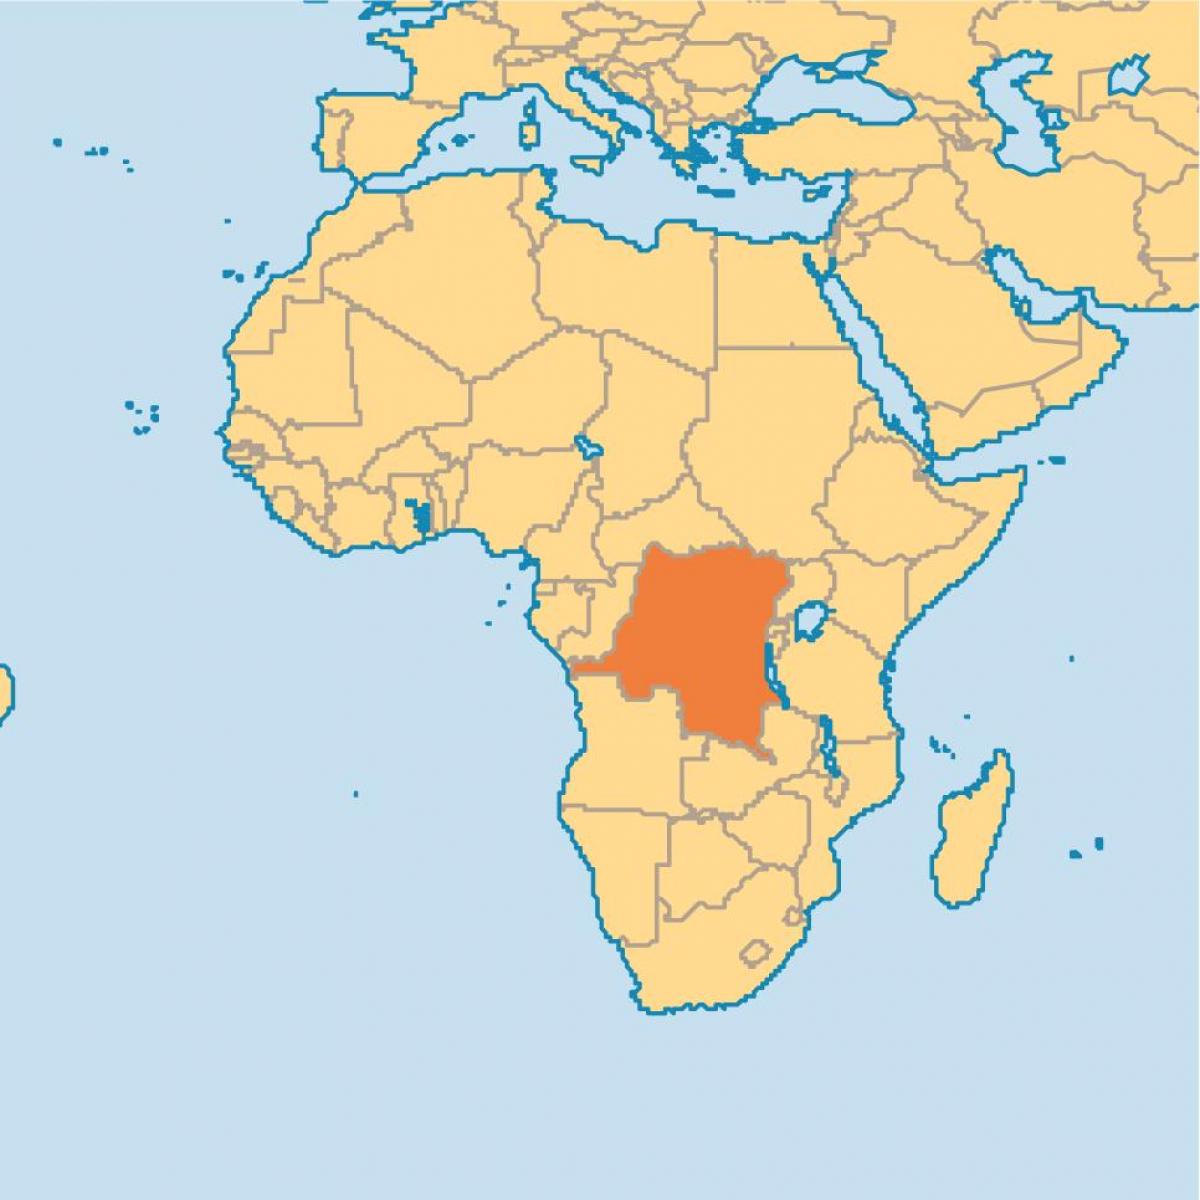 Kort over zaire på verden